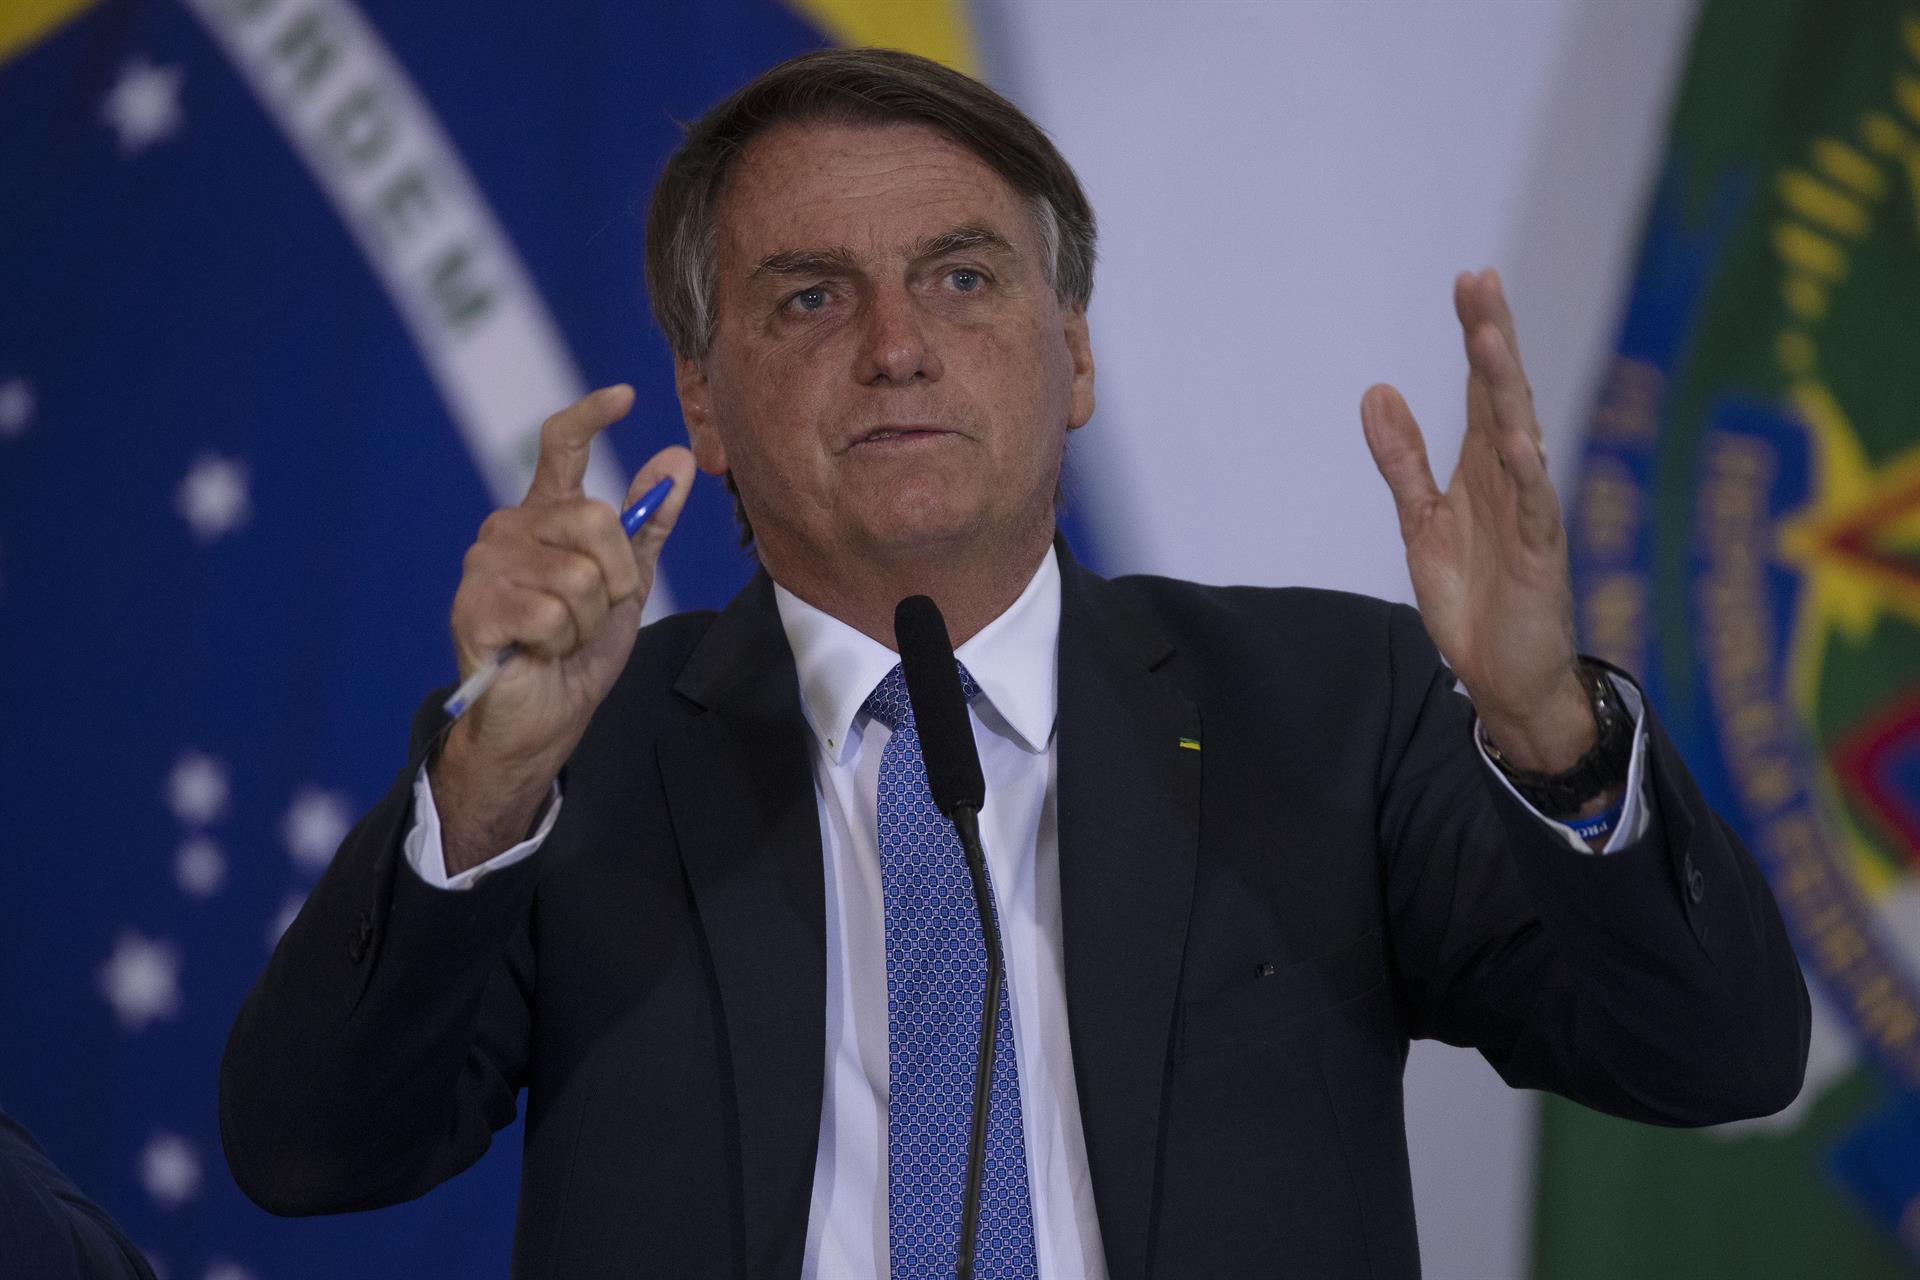 Últimos sondeos muestran que Bolsonaro sería reelegido en Brasil, según analista